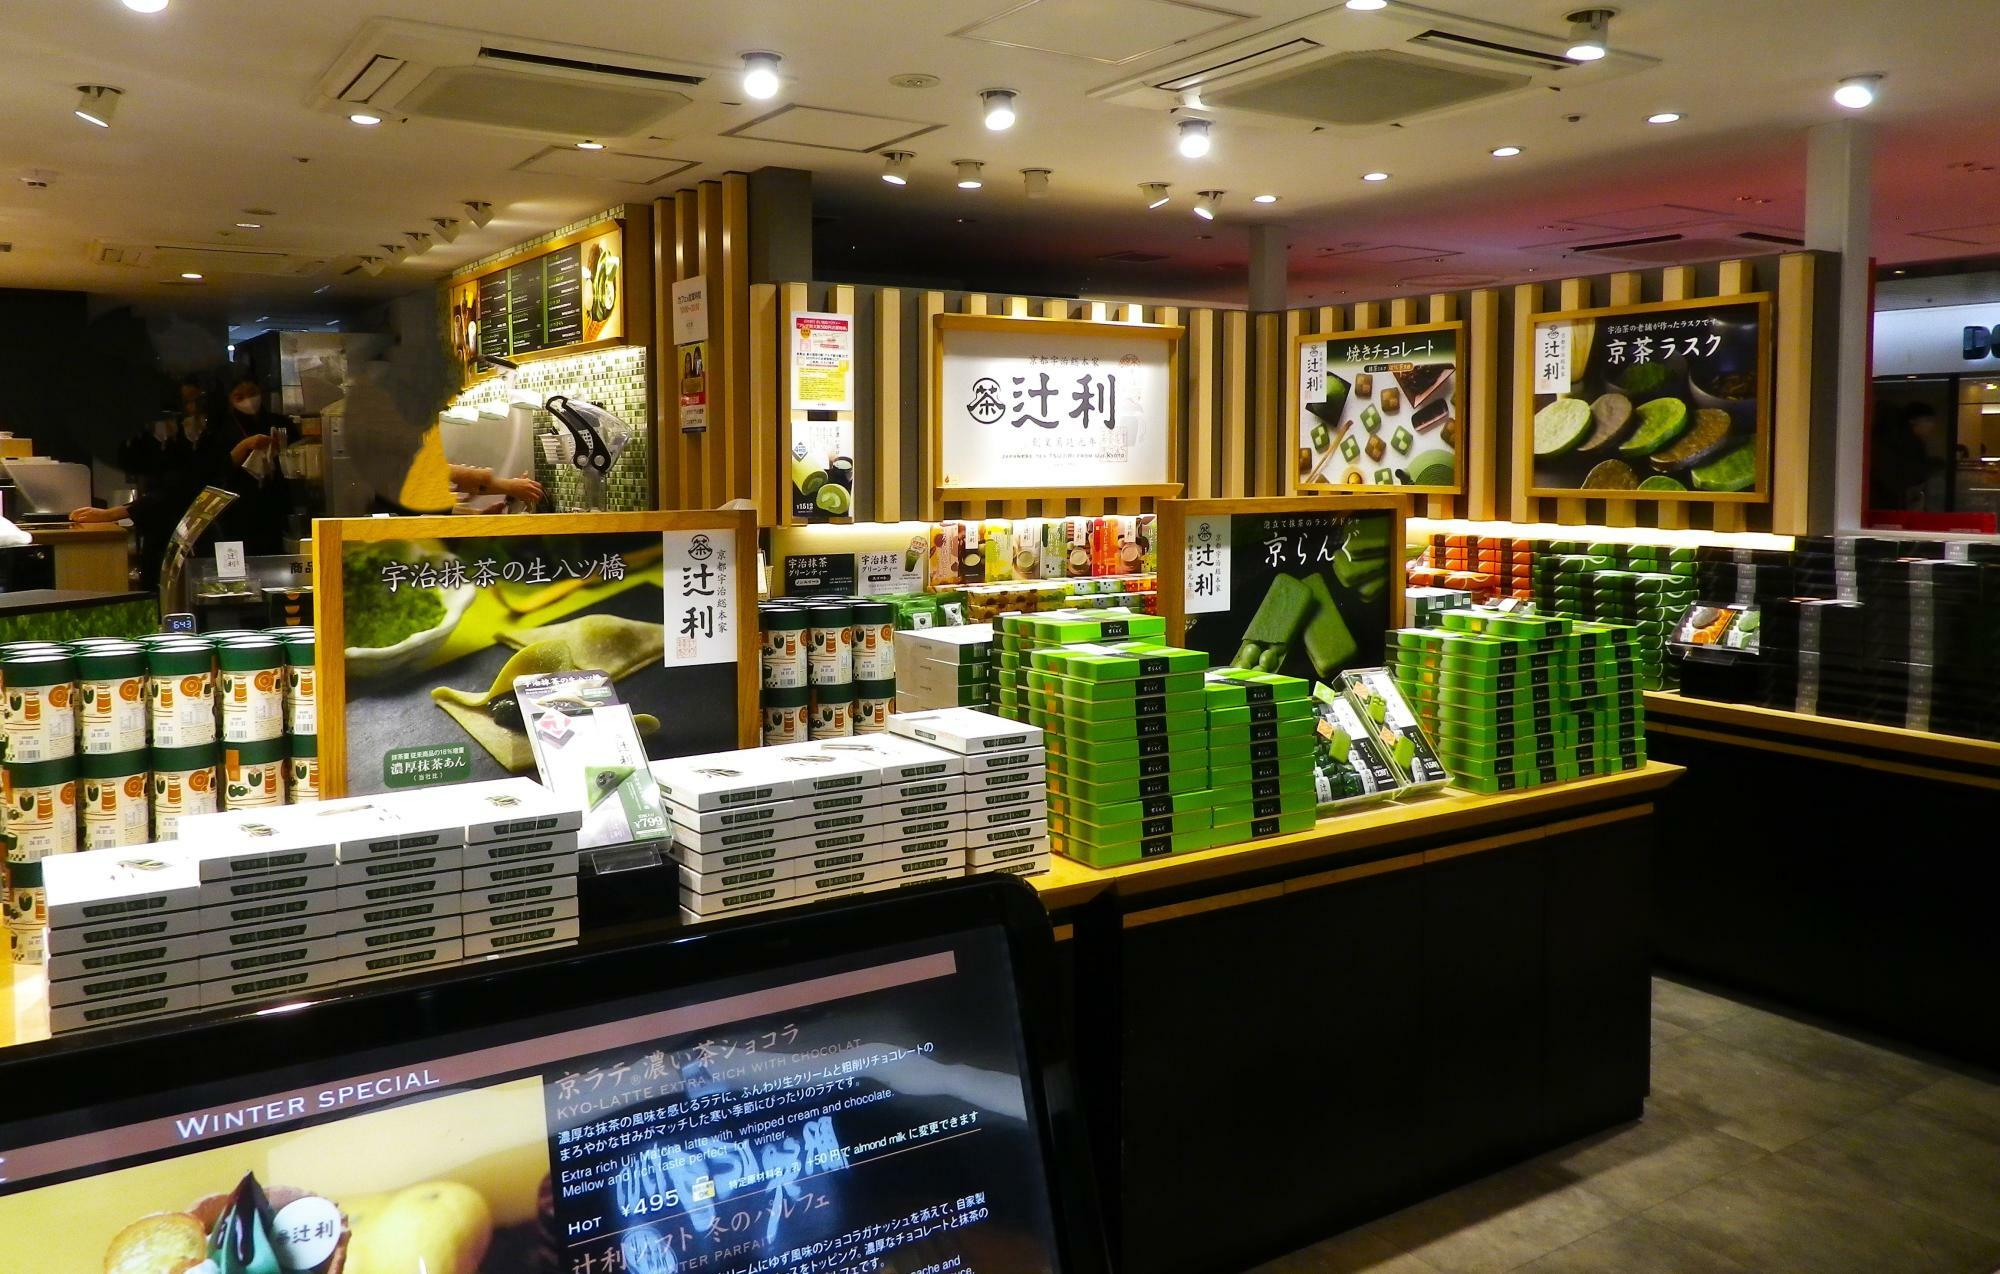 抹茶やチョコを使用したユニークなスイーツが色々ある「辻利アルデ新大阪店」の店頭。